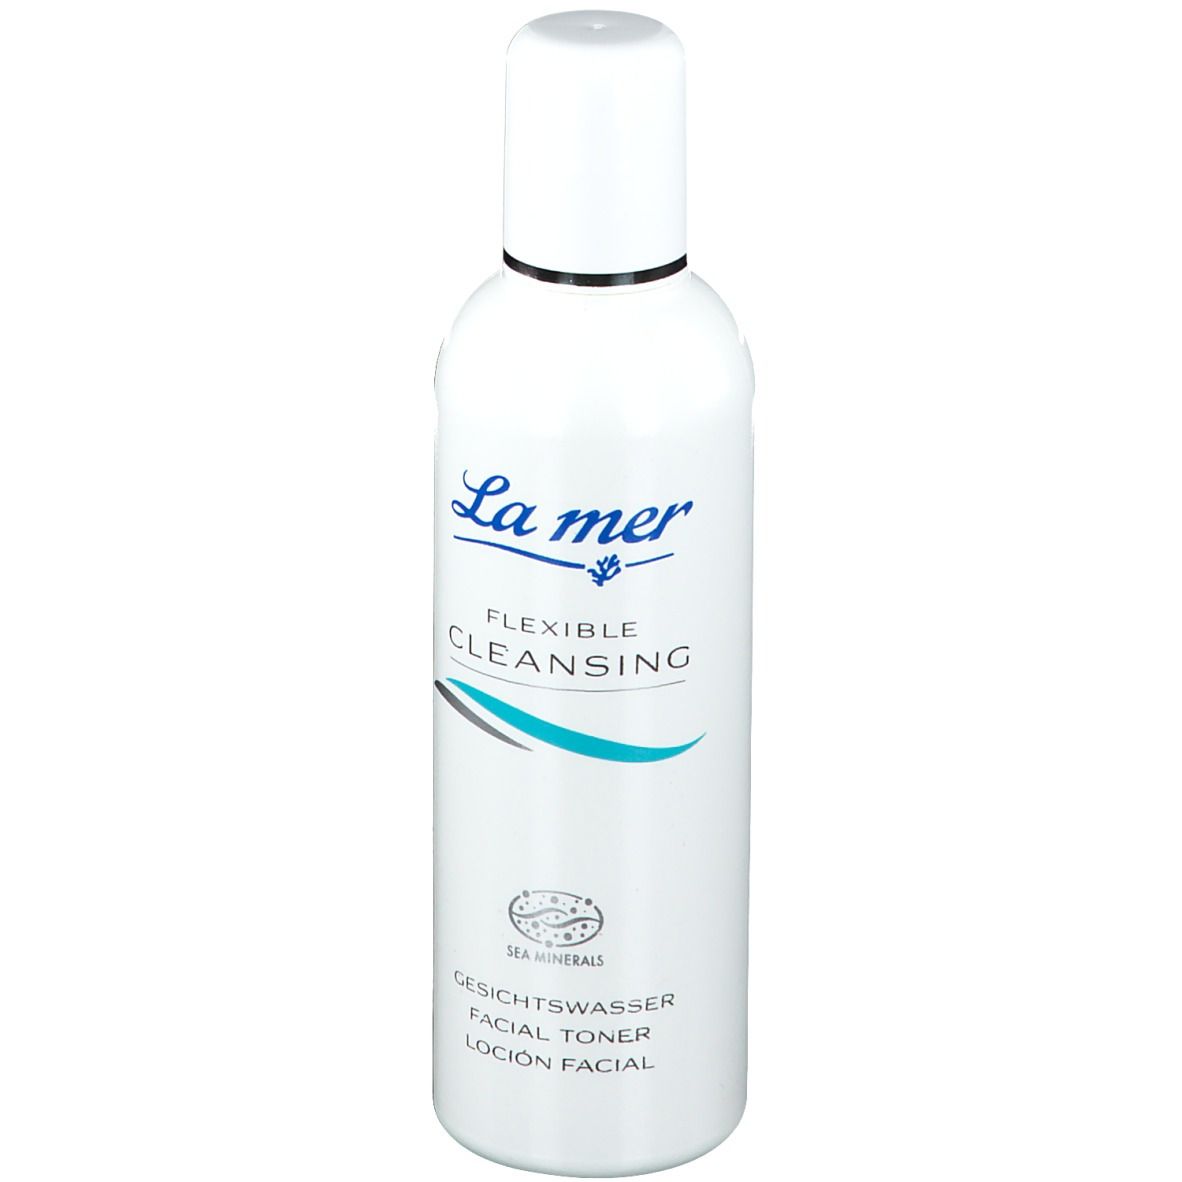 La mer FLEXIBLE Cleansing Gesichtswasser mit Parfum